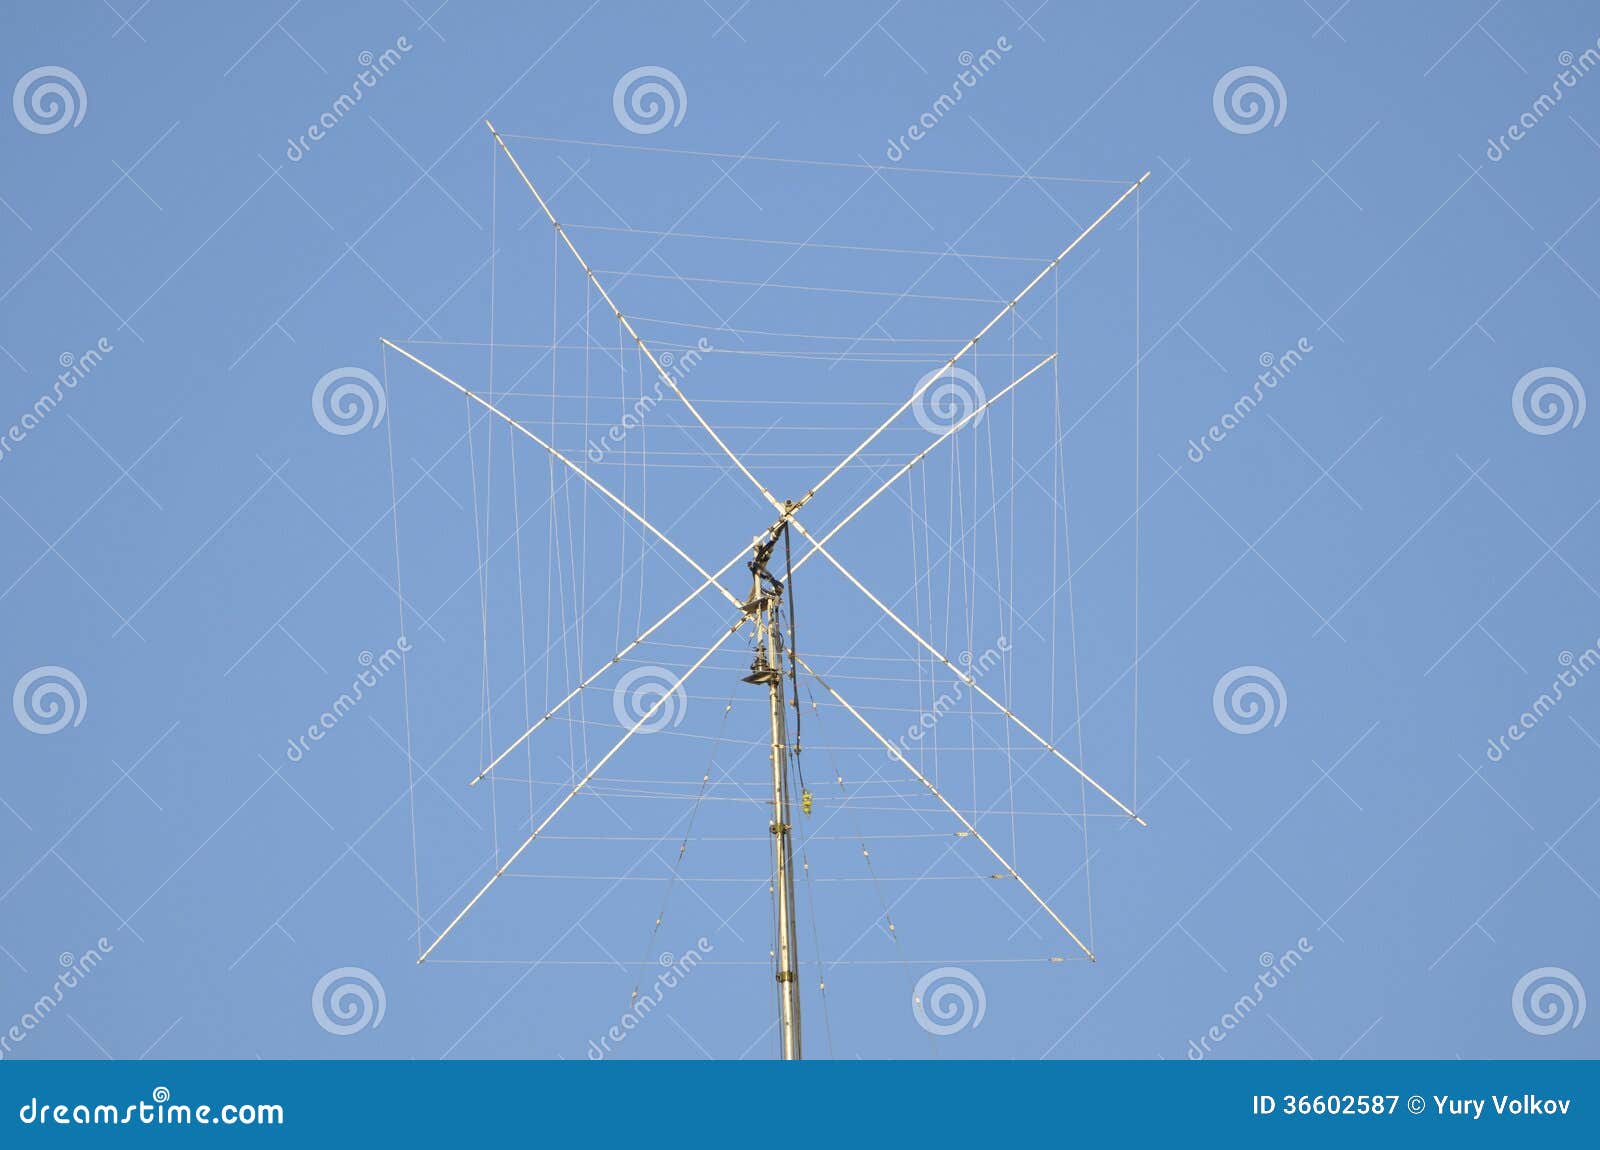 Amateur Radio Antennas 14